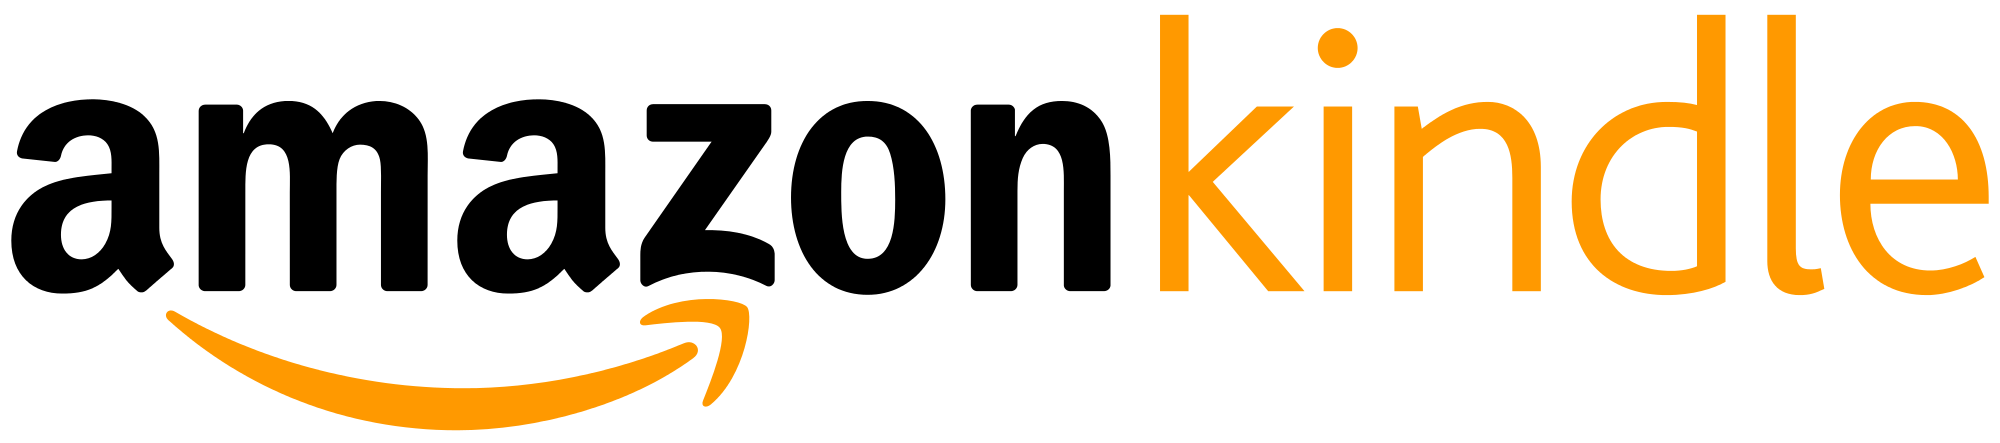 Amazon Kindle Logo Vector